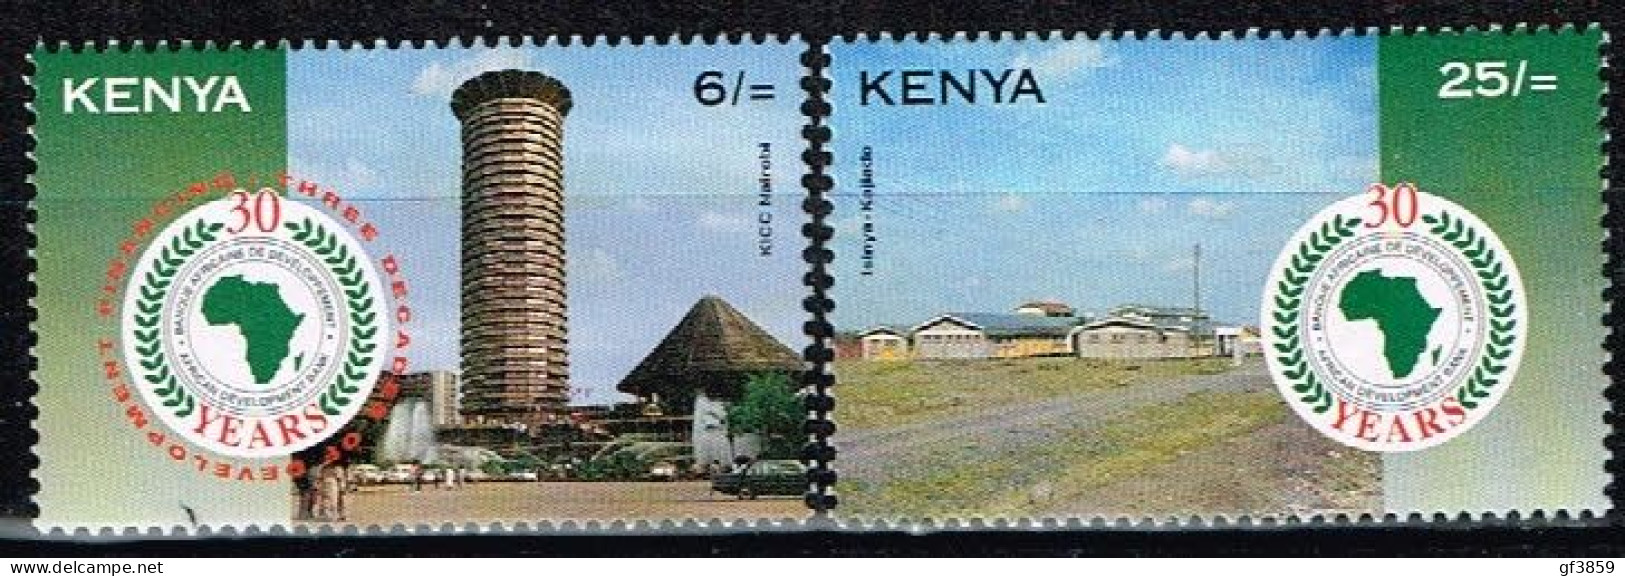 KENYA / Neufs / MNH ** / 1994  - 30 Ans De La Banque Africaine De Développement - Kenya (1963-...)